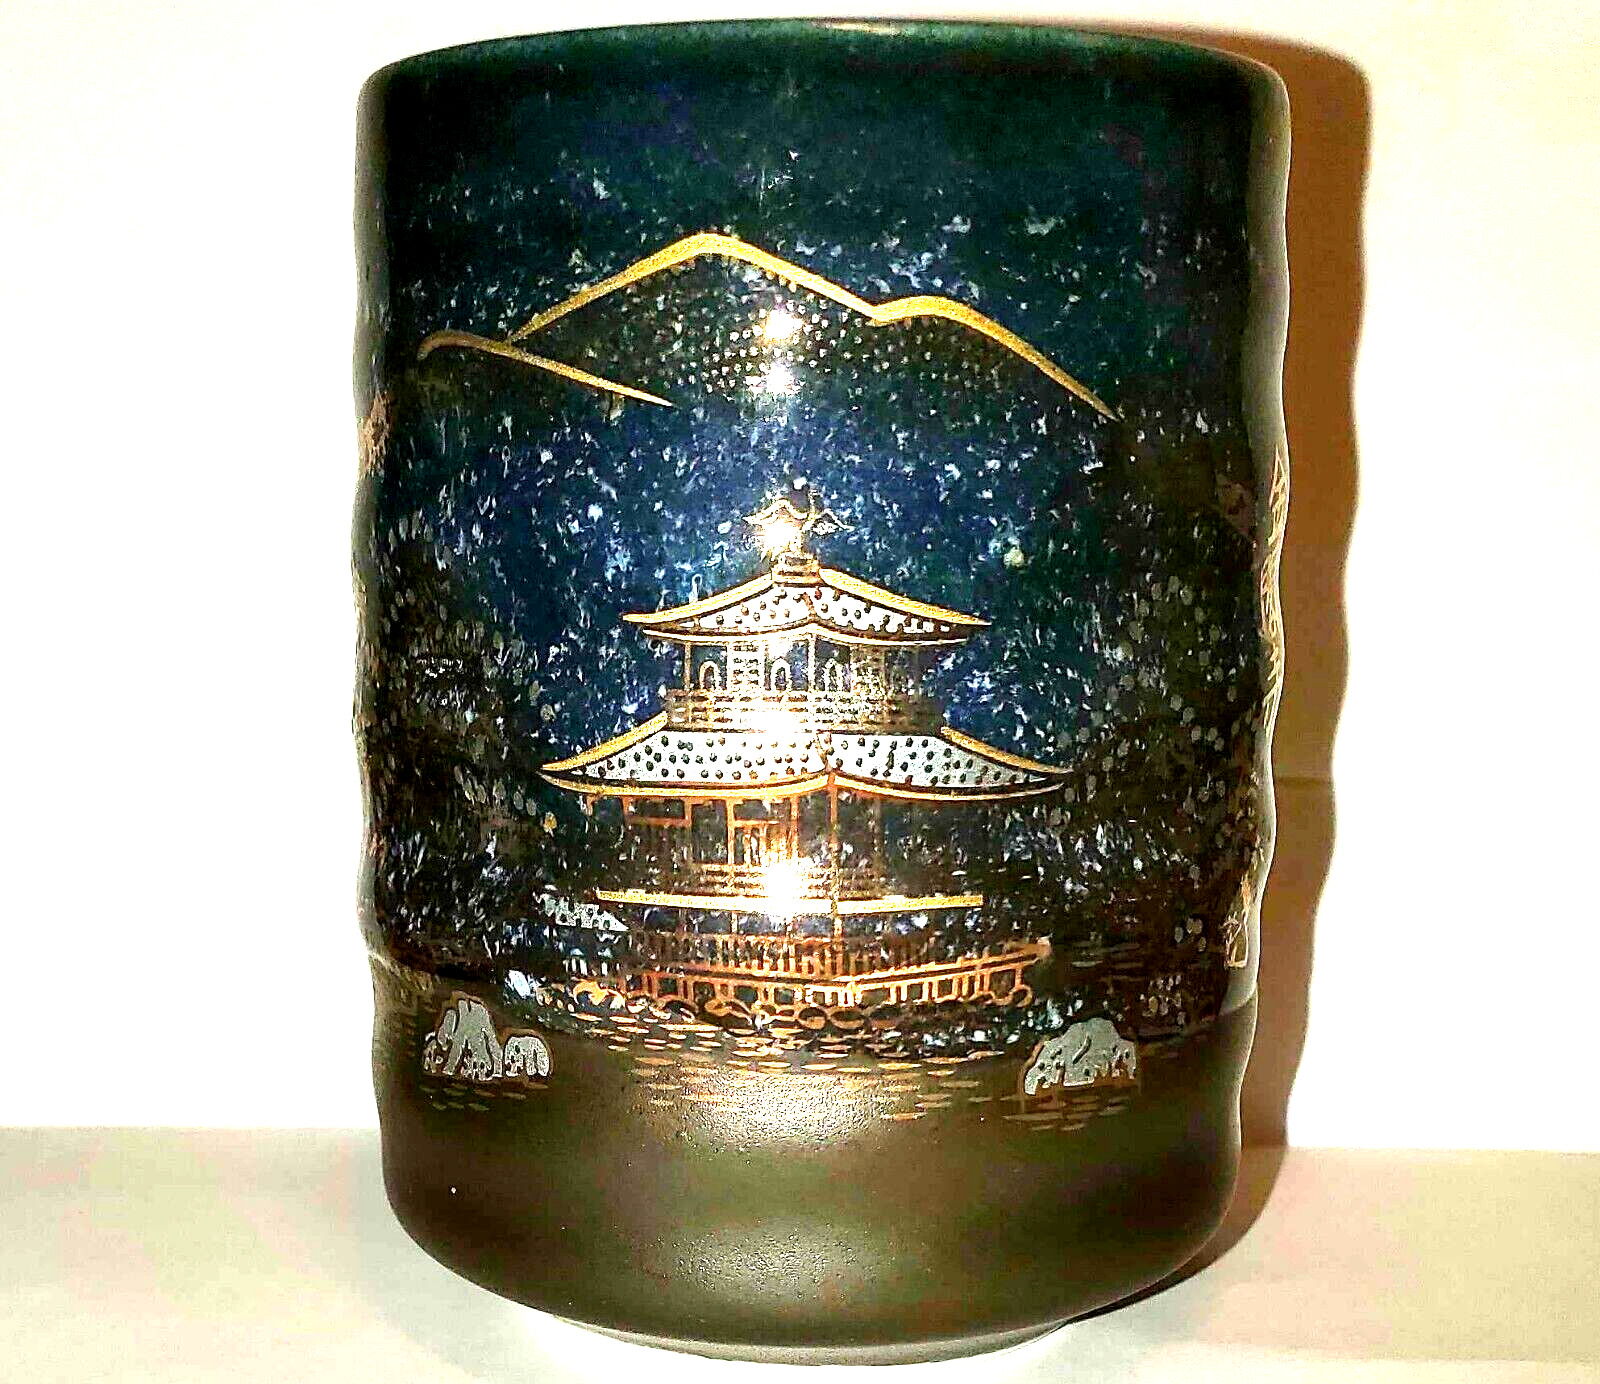 Kinkaku-ji Temple Replacement Pottery/Porcelain Tea Cup Kinkakuji Kyoto Japan